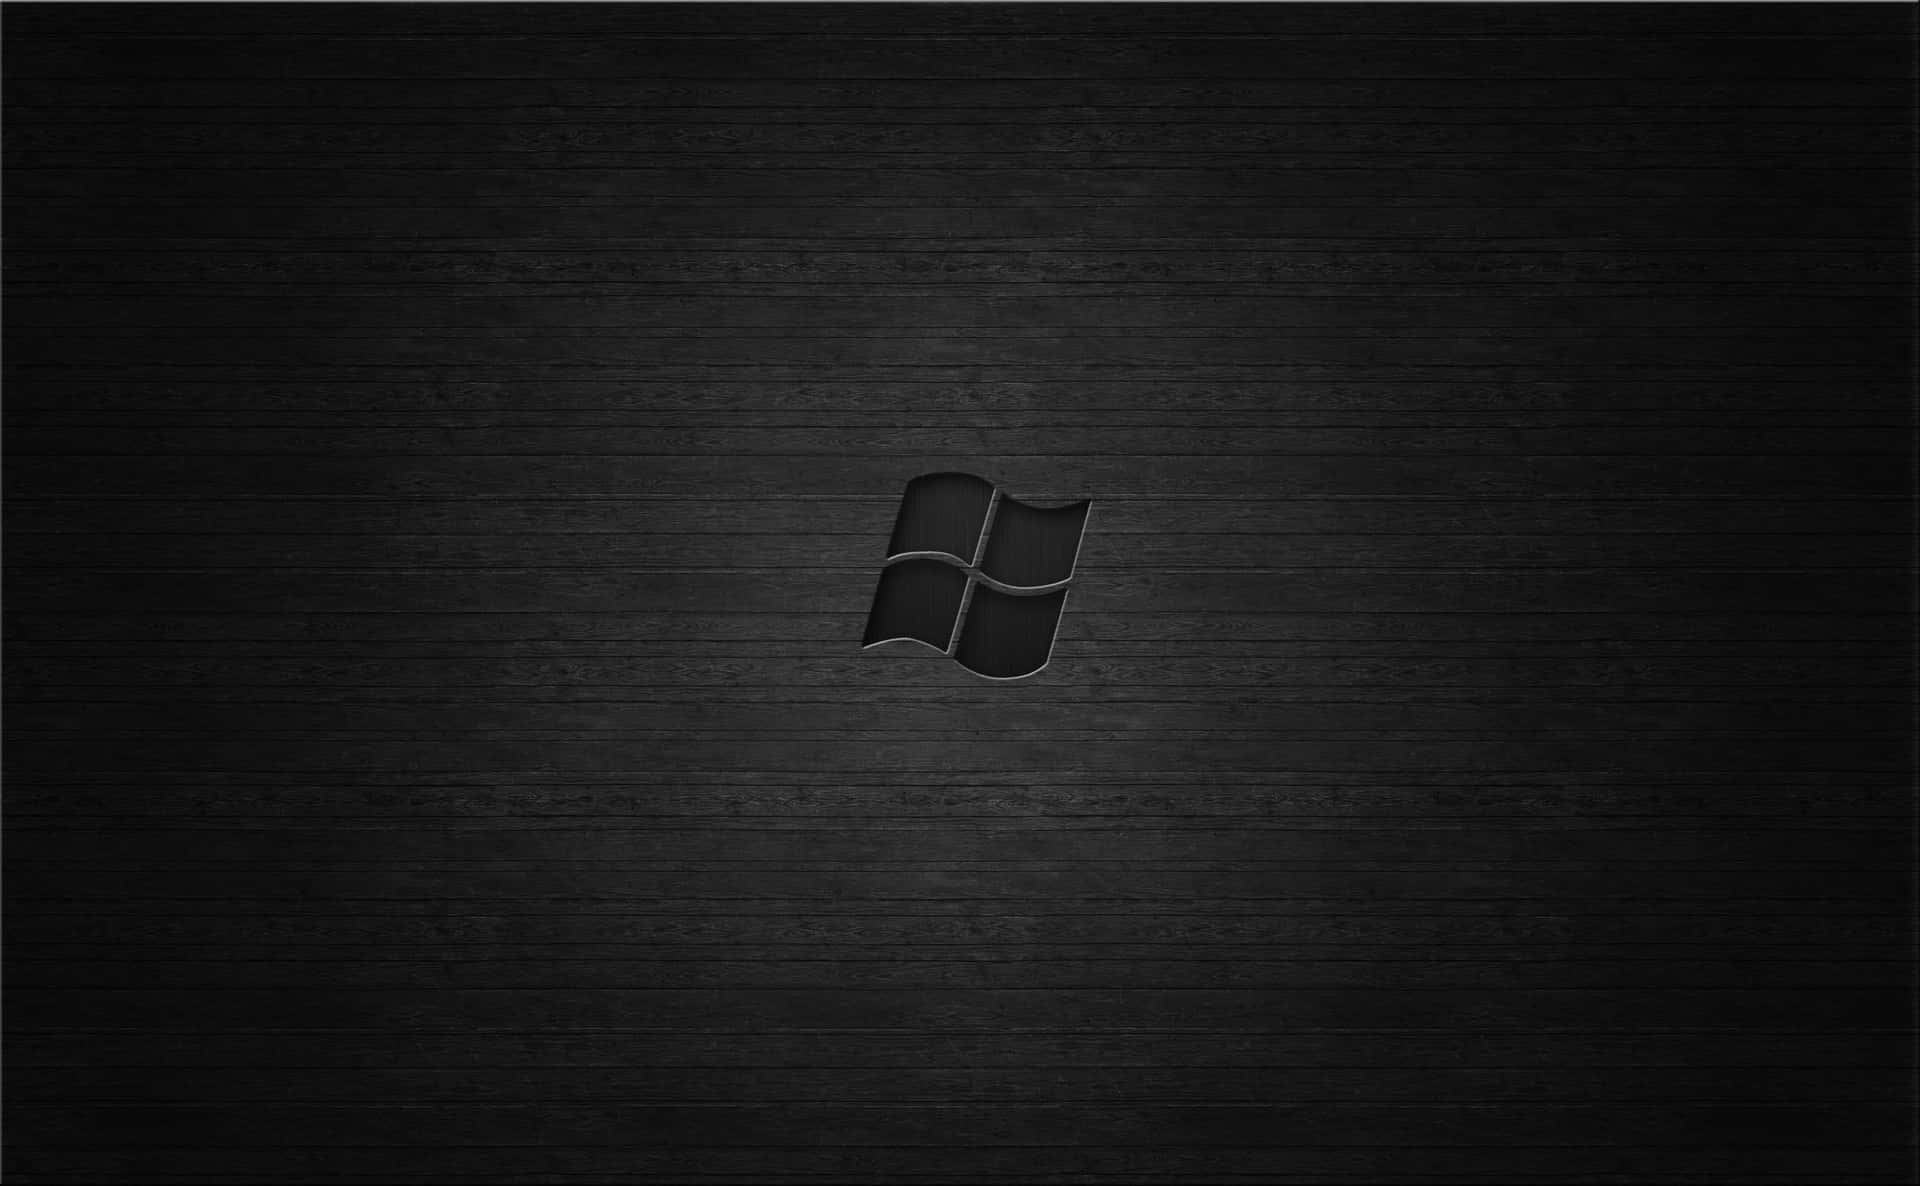 Windows7 Hintergrundbilder Hd Hintergrundbilder Wallpaper